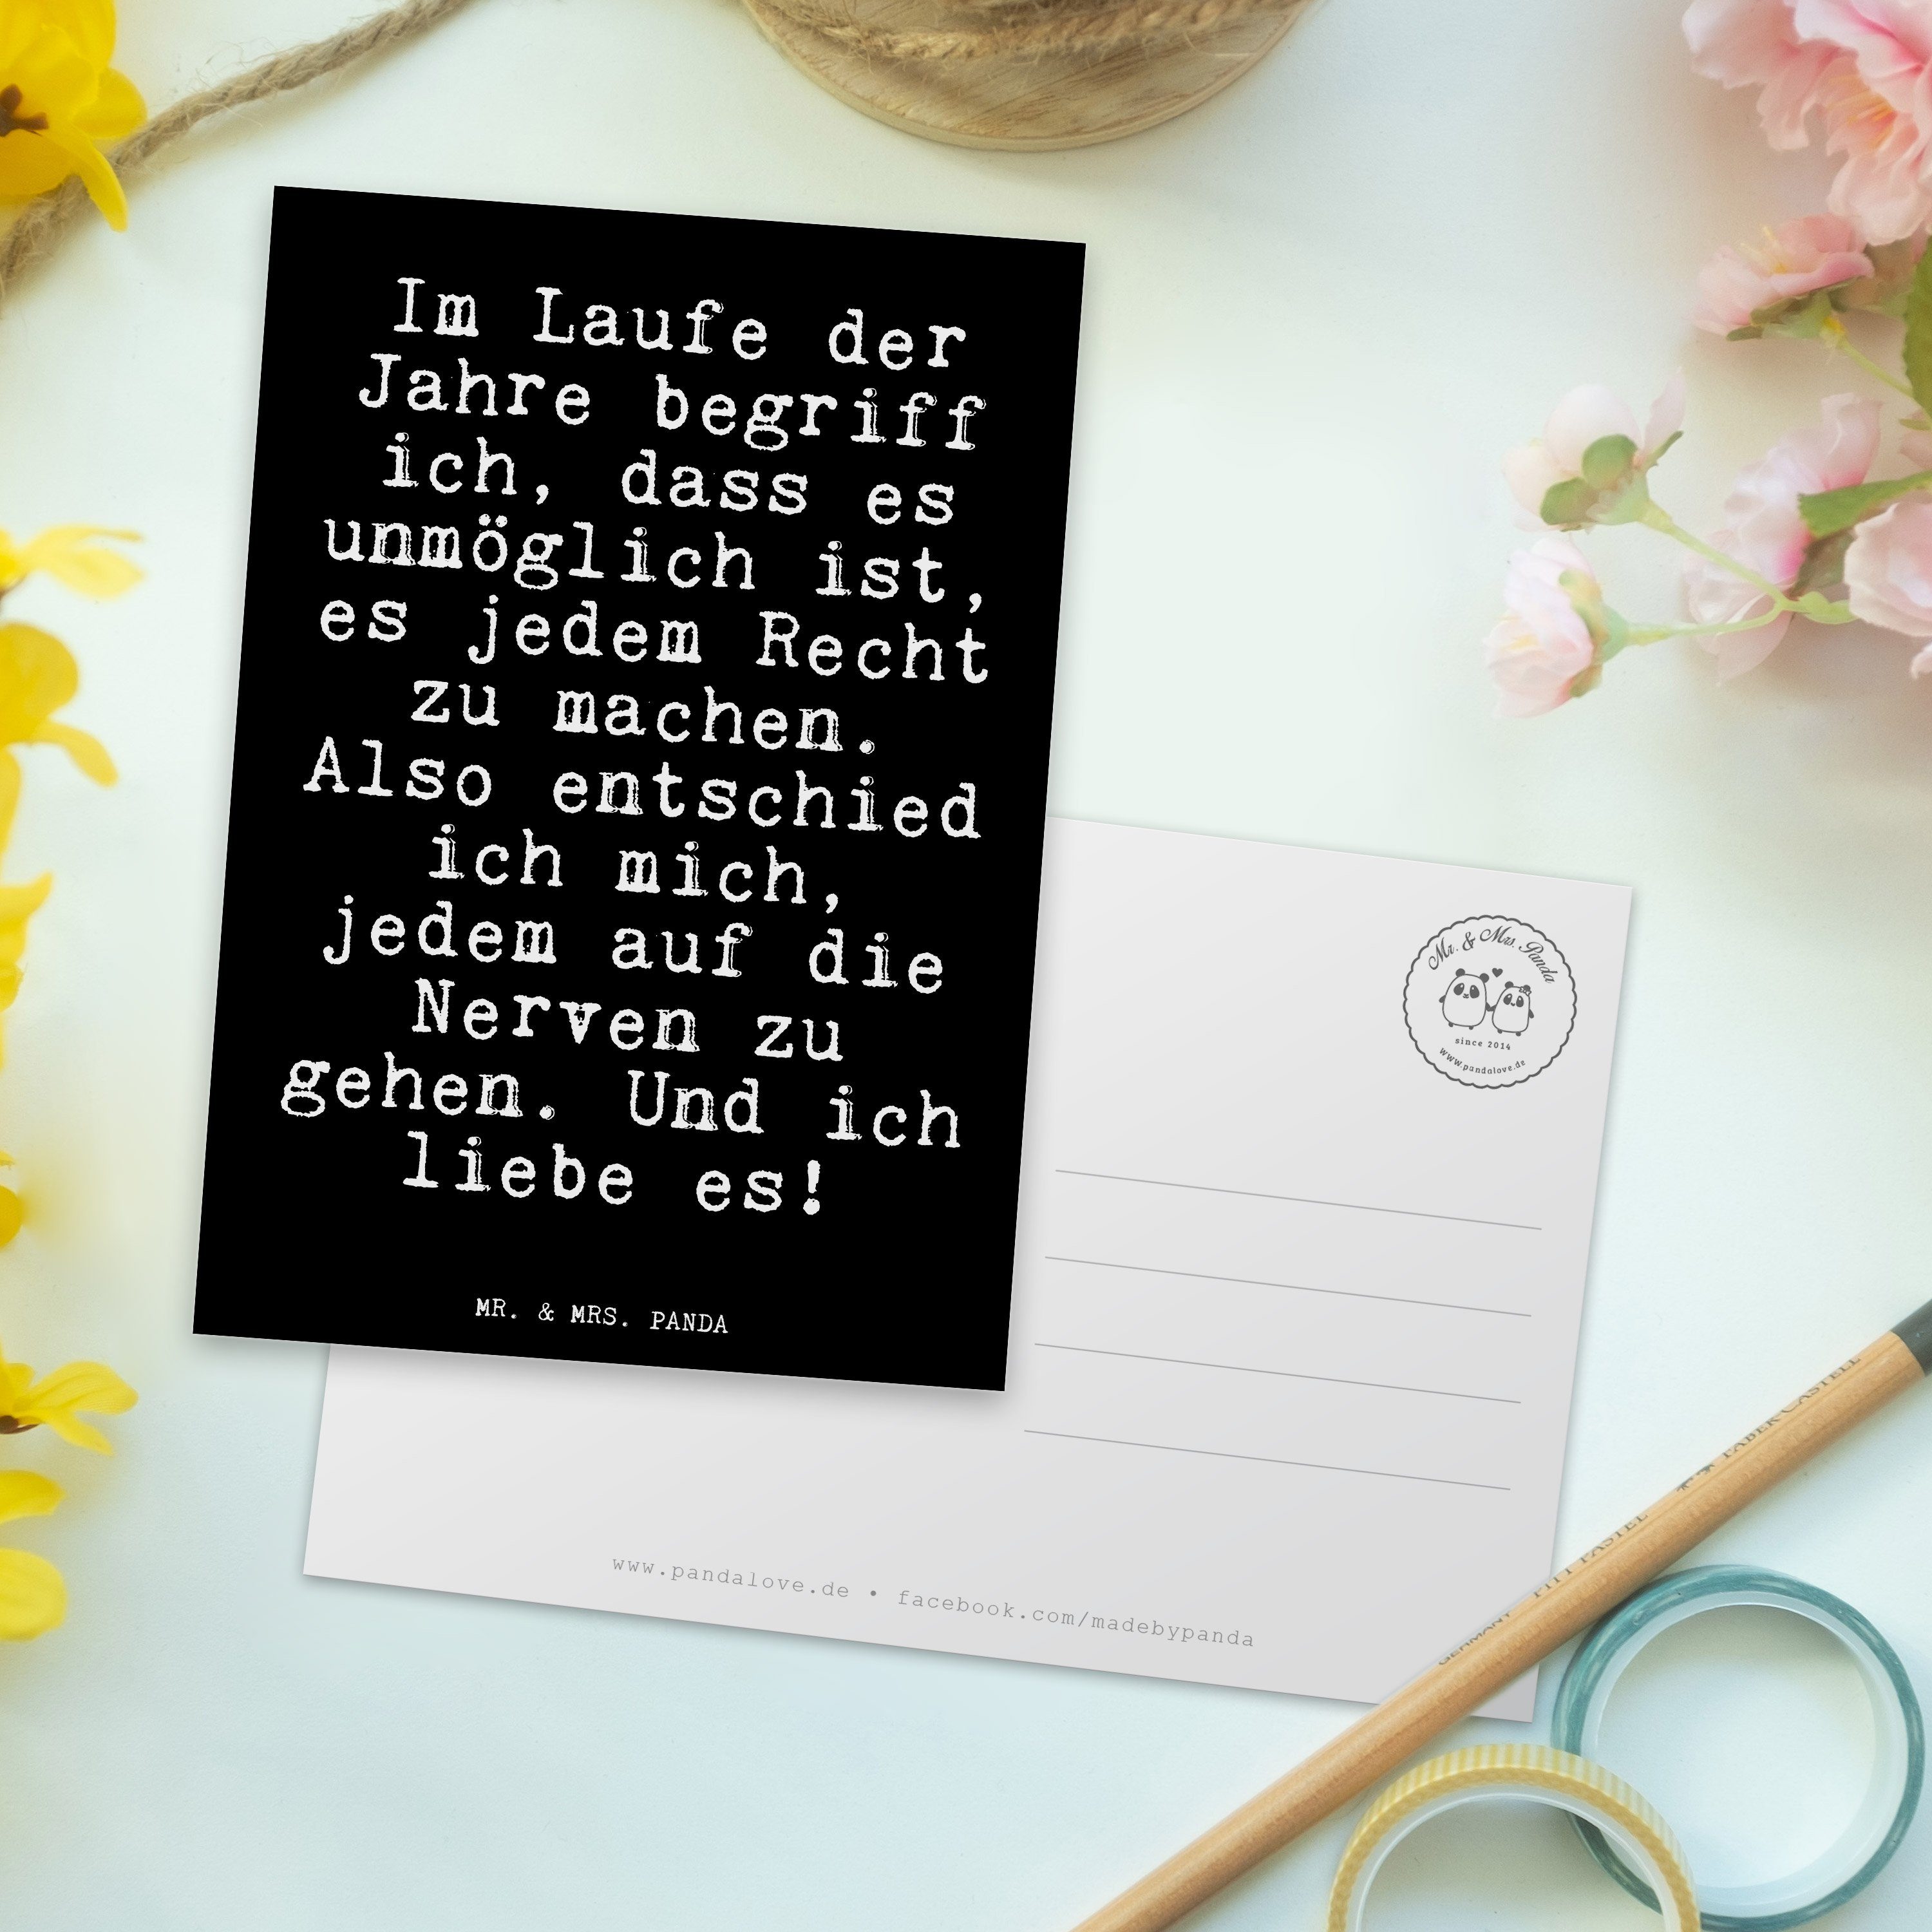 Mr. & Mrs. Panda Geschenk, - Jahre... Lebensfreude, der - Im Schwarz Spru Glizer Postkarte Laufe